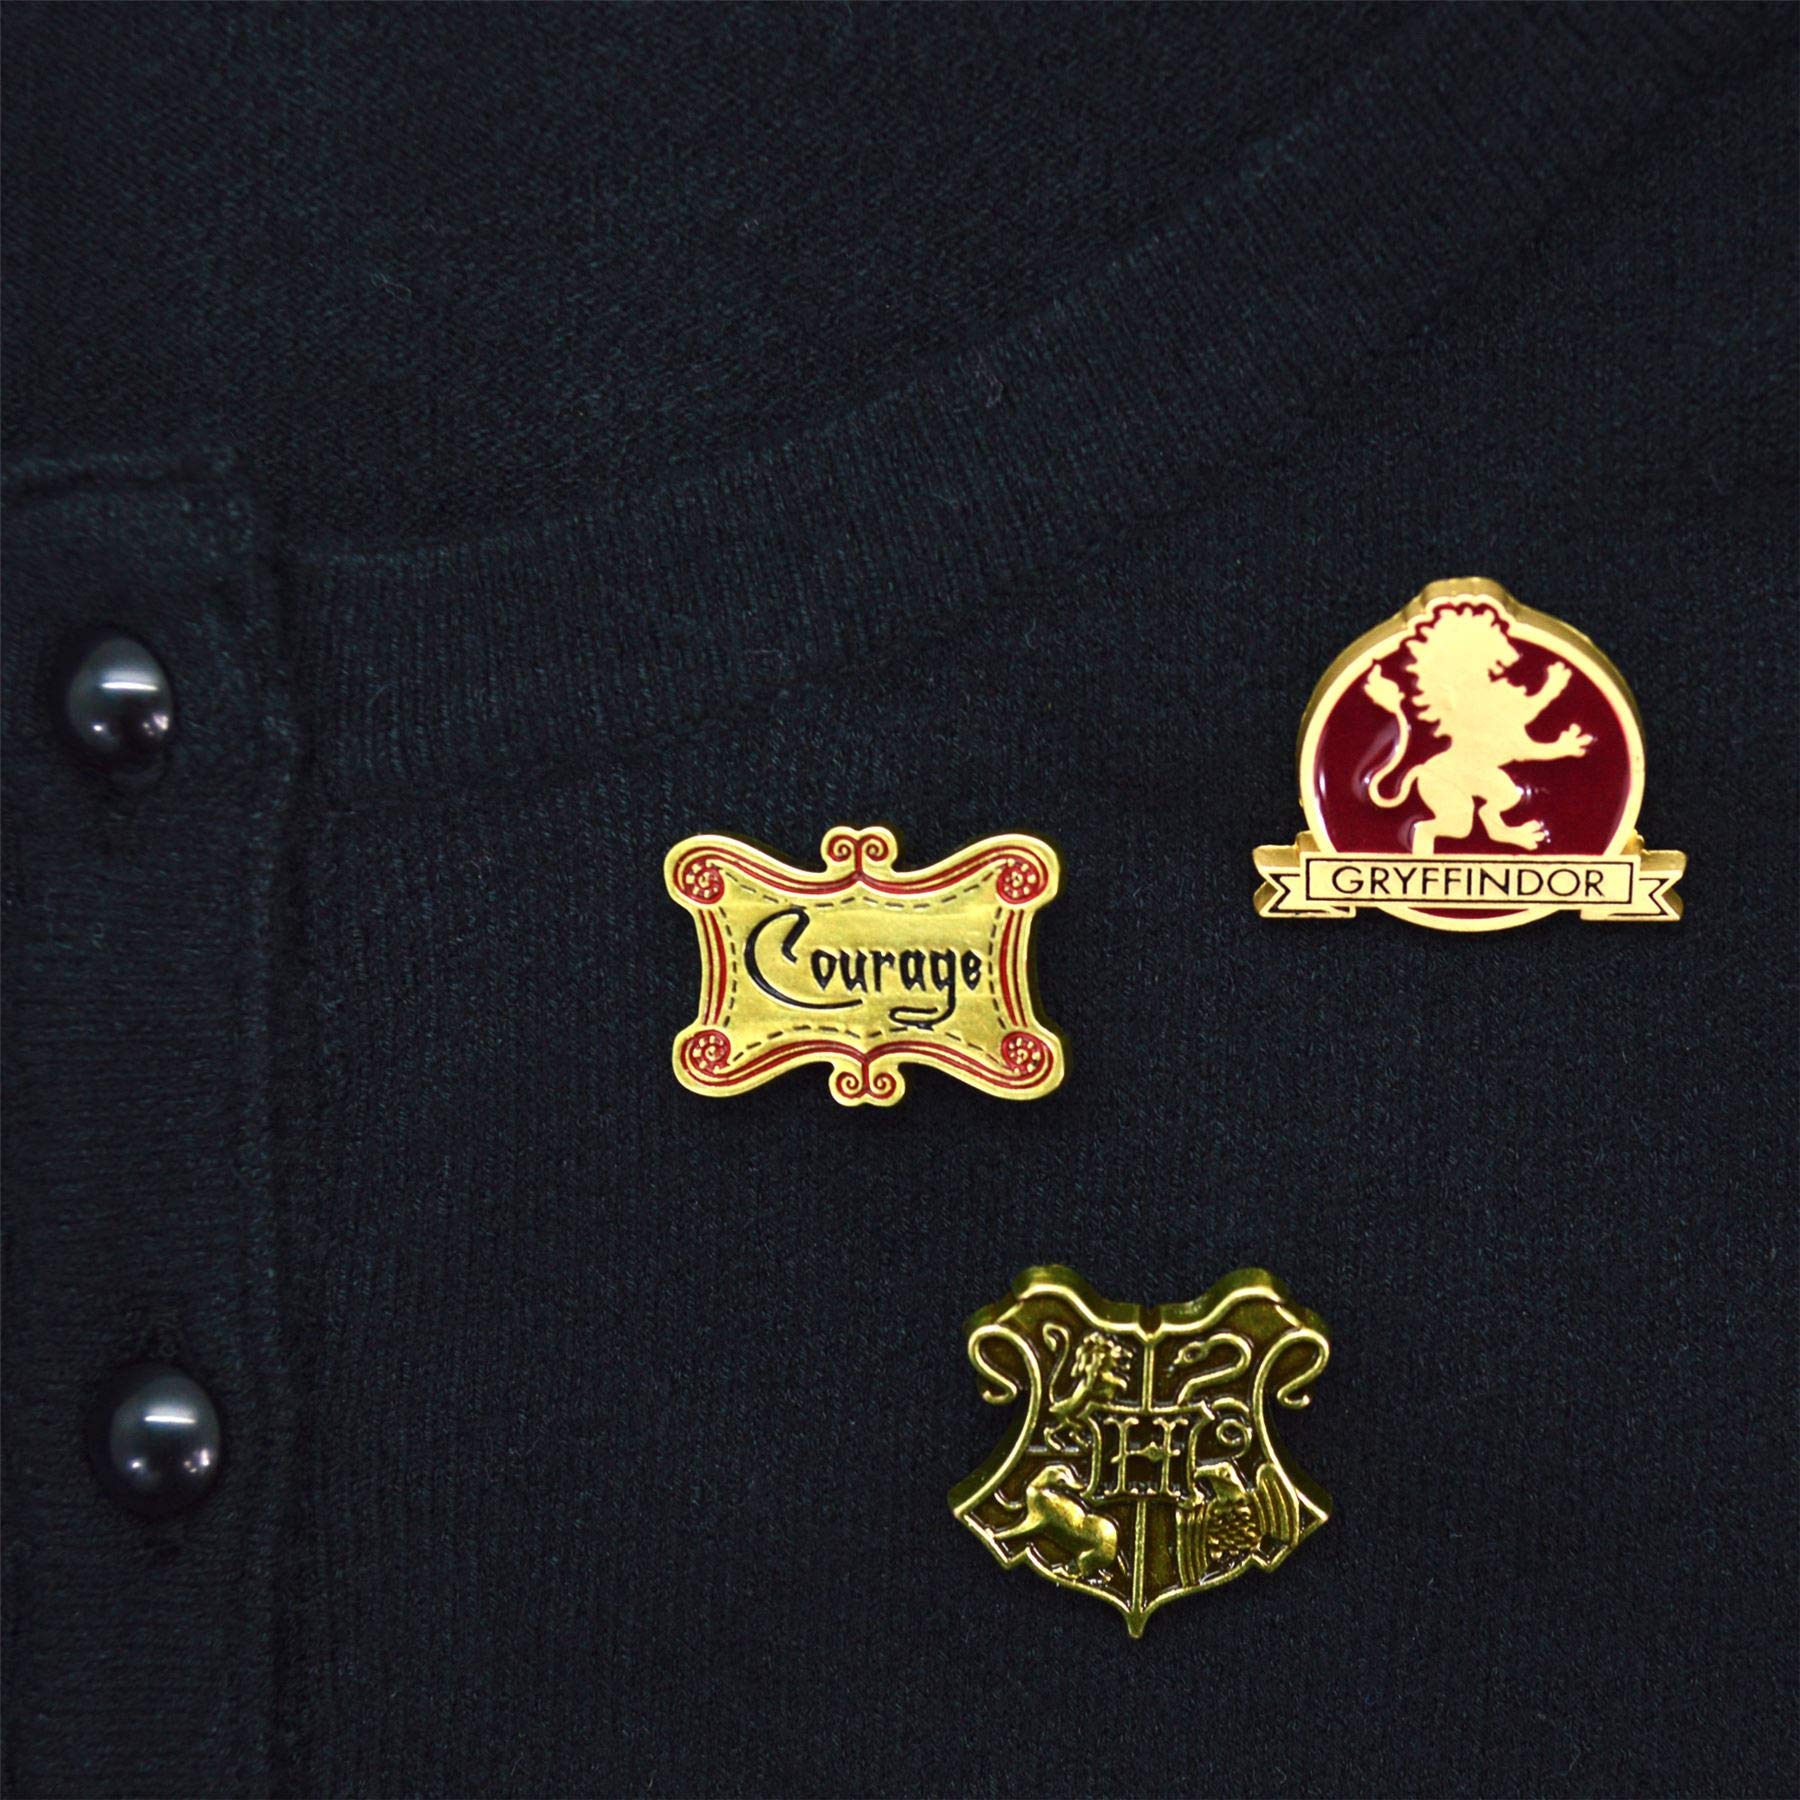 Harry Potter Gryffindor Lapel Pin Set | Courage, Hogwarts Logo Crest